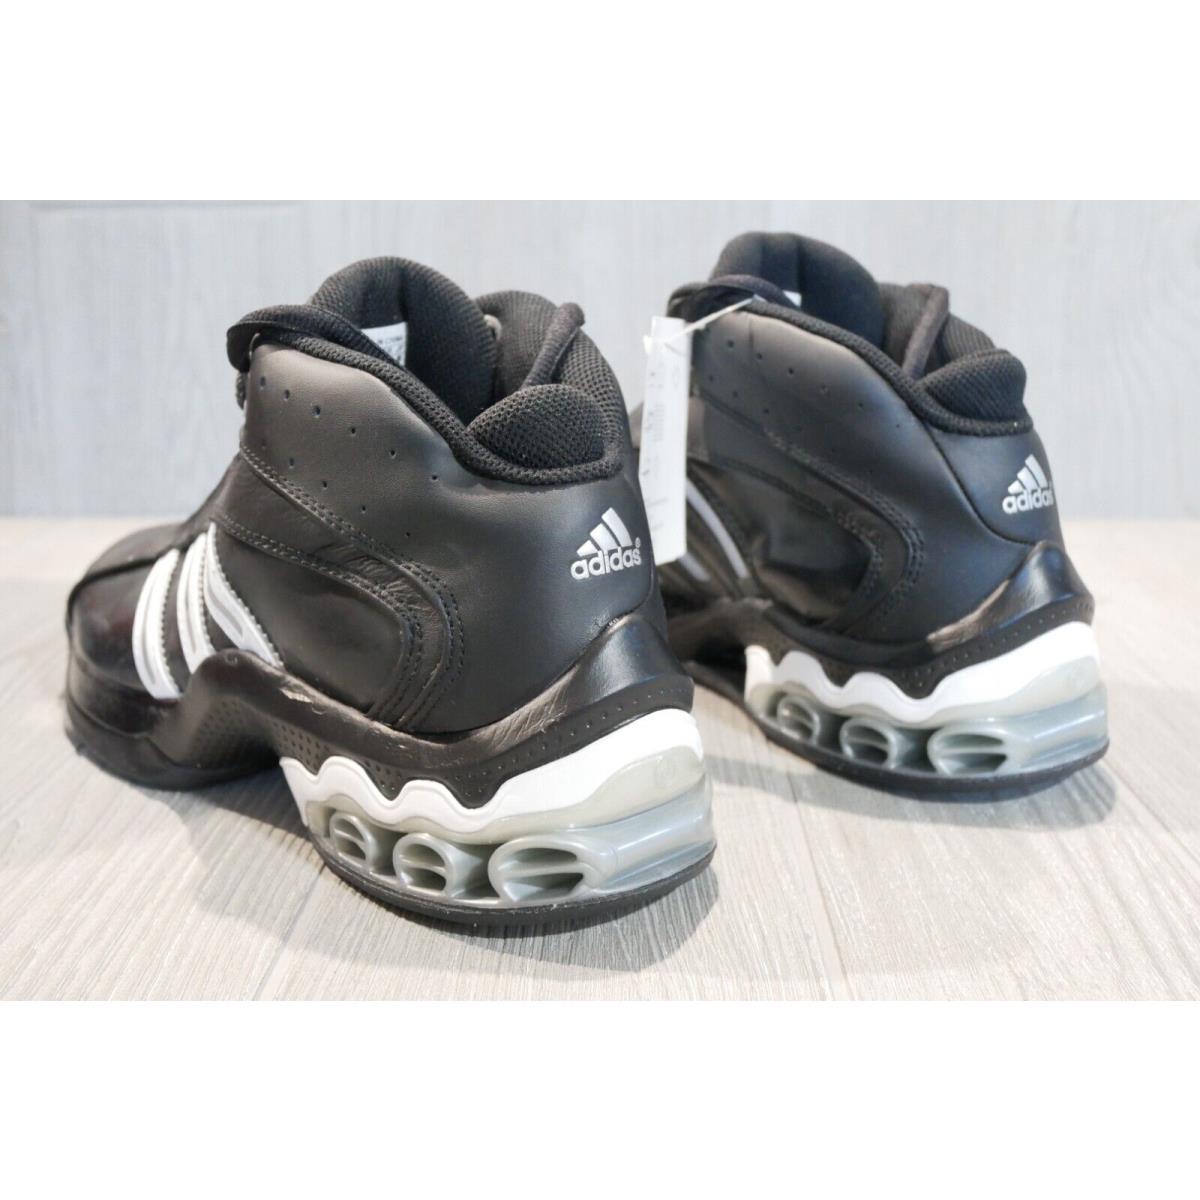 Adidas shoes Cub - Black 3